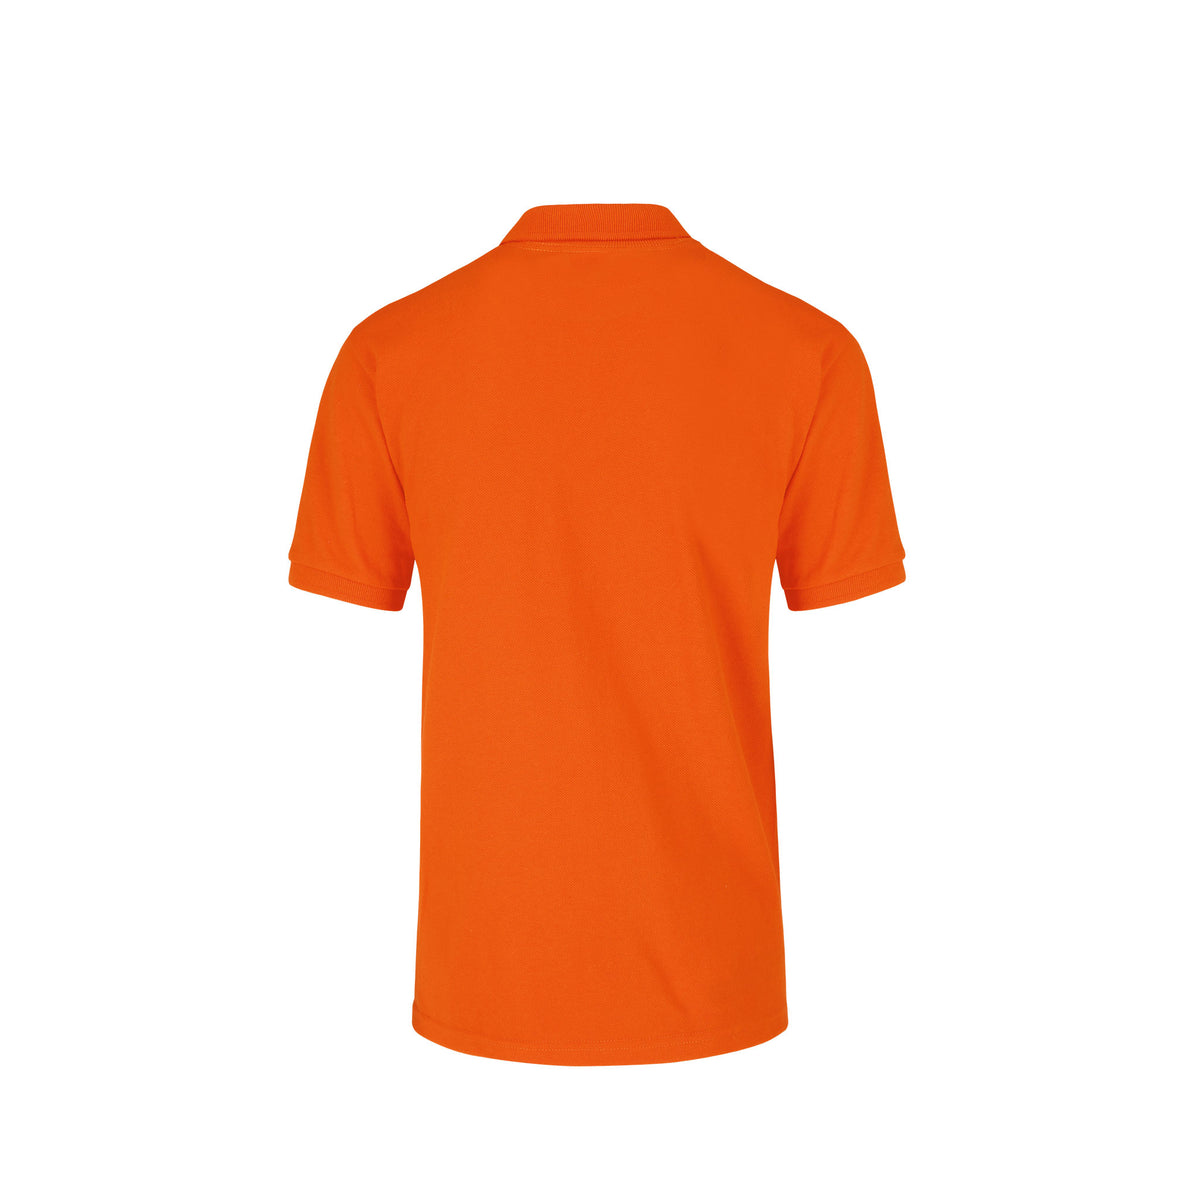 Youth’s Unisex Sport Shirt (Orange) – Yazbek USA Mint